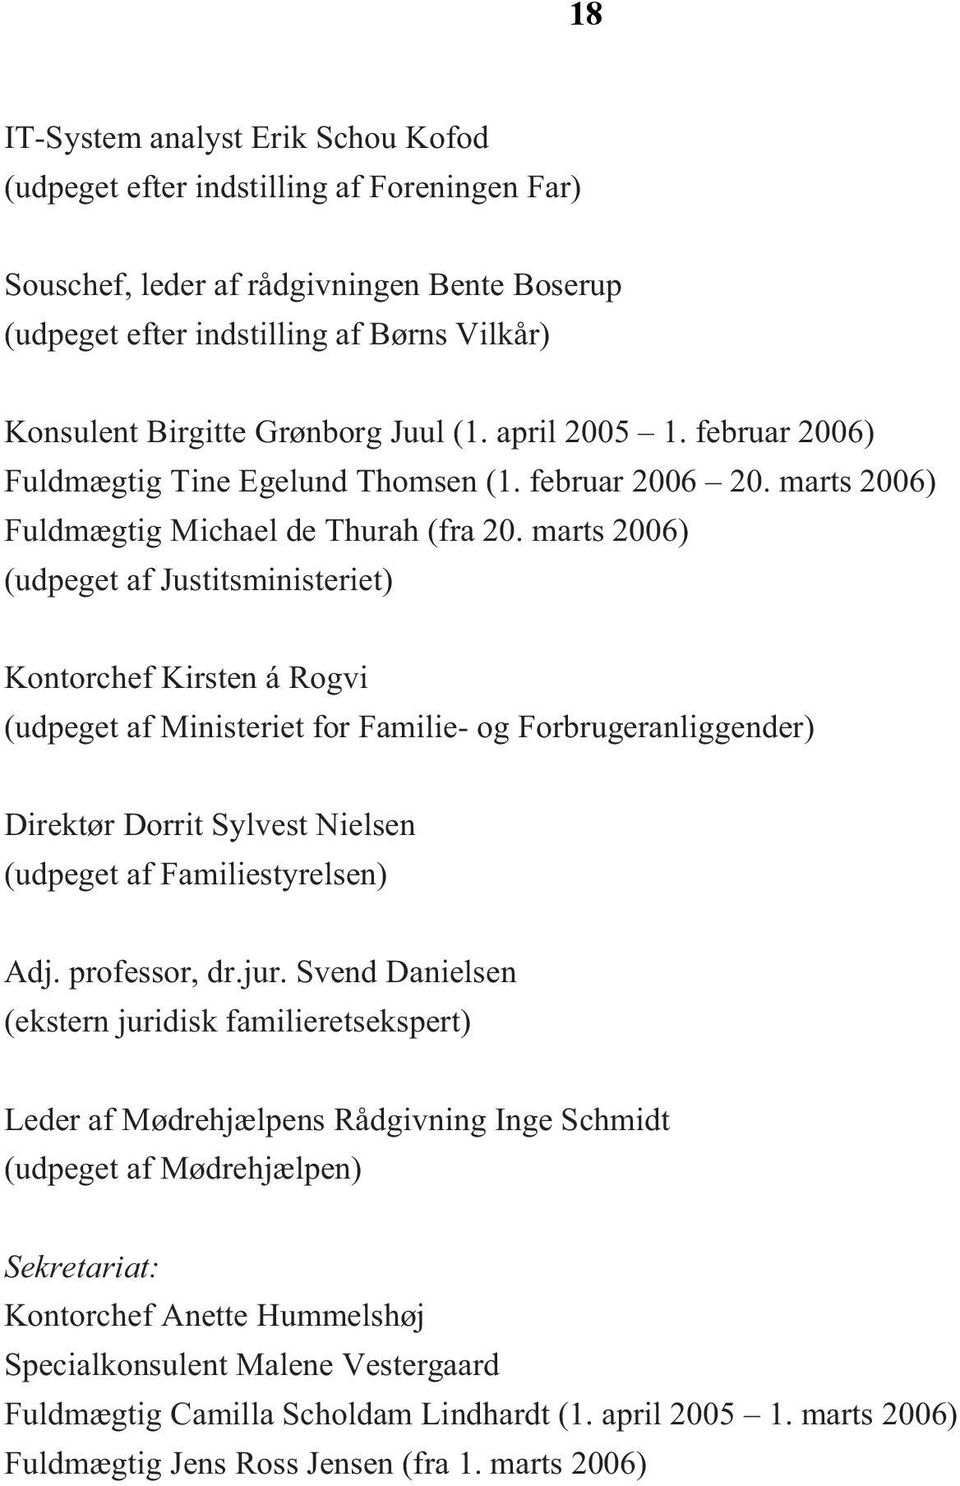 marts 2006) (udpeget af Justitsministeriet) Kontorchef Kirsten á Rogvi (udpeget af Ministeriet for Familie- og Forbrugeranliggender) Direktør Dorrit Sylvest Nielsen (udpeget af Familiestyrelsen) Adj.